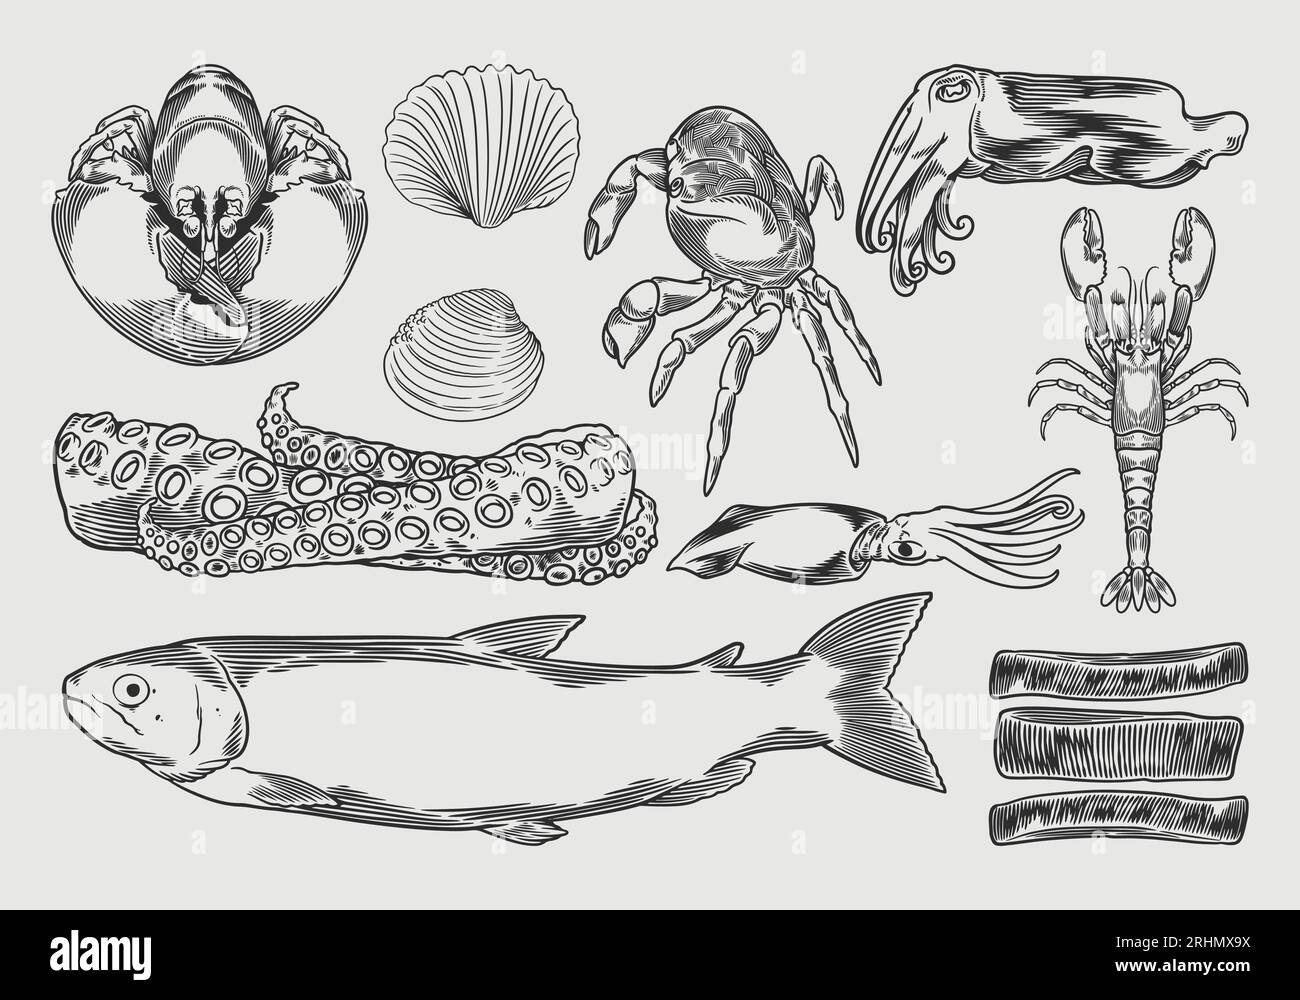 Illustrazione vettoriale del set di disegno frutti di mare. Disegno a mano vintage di pesci marini in linea, ostriche, cozze, aragoste, calamari, polpo, granchi, pr Illustrazione Vettoriale